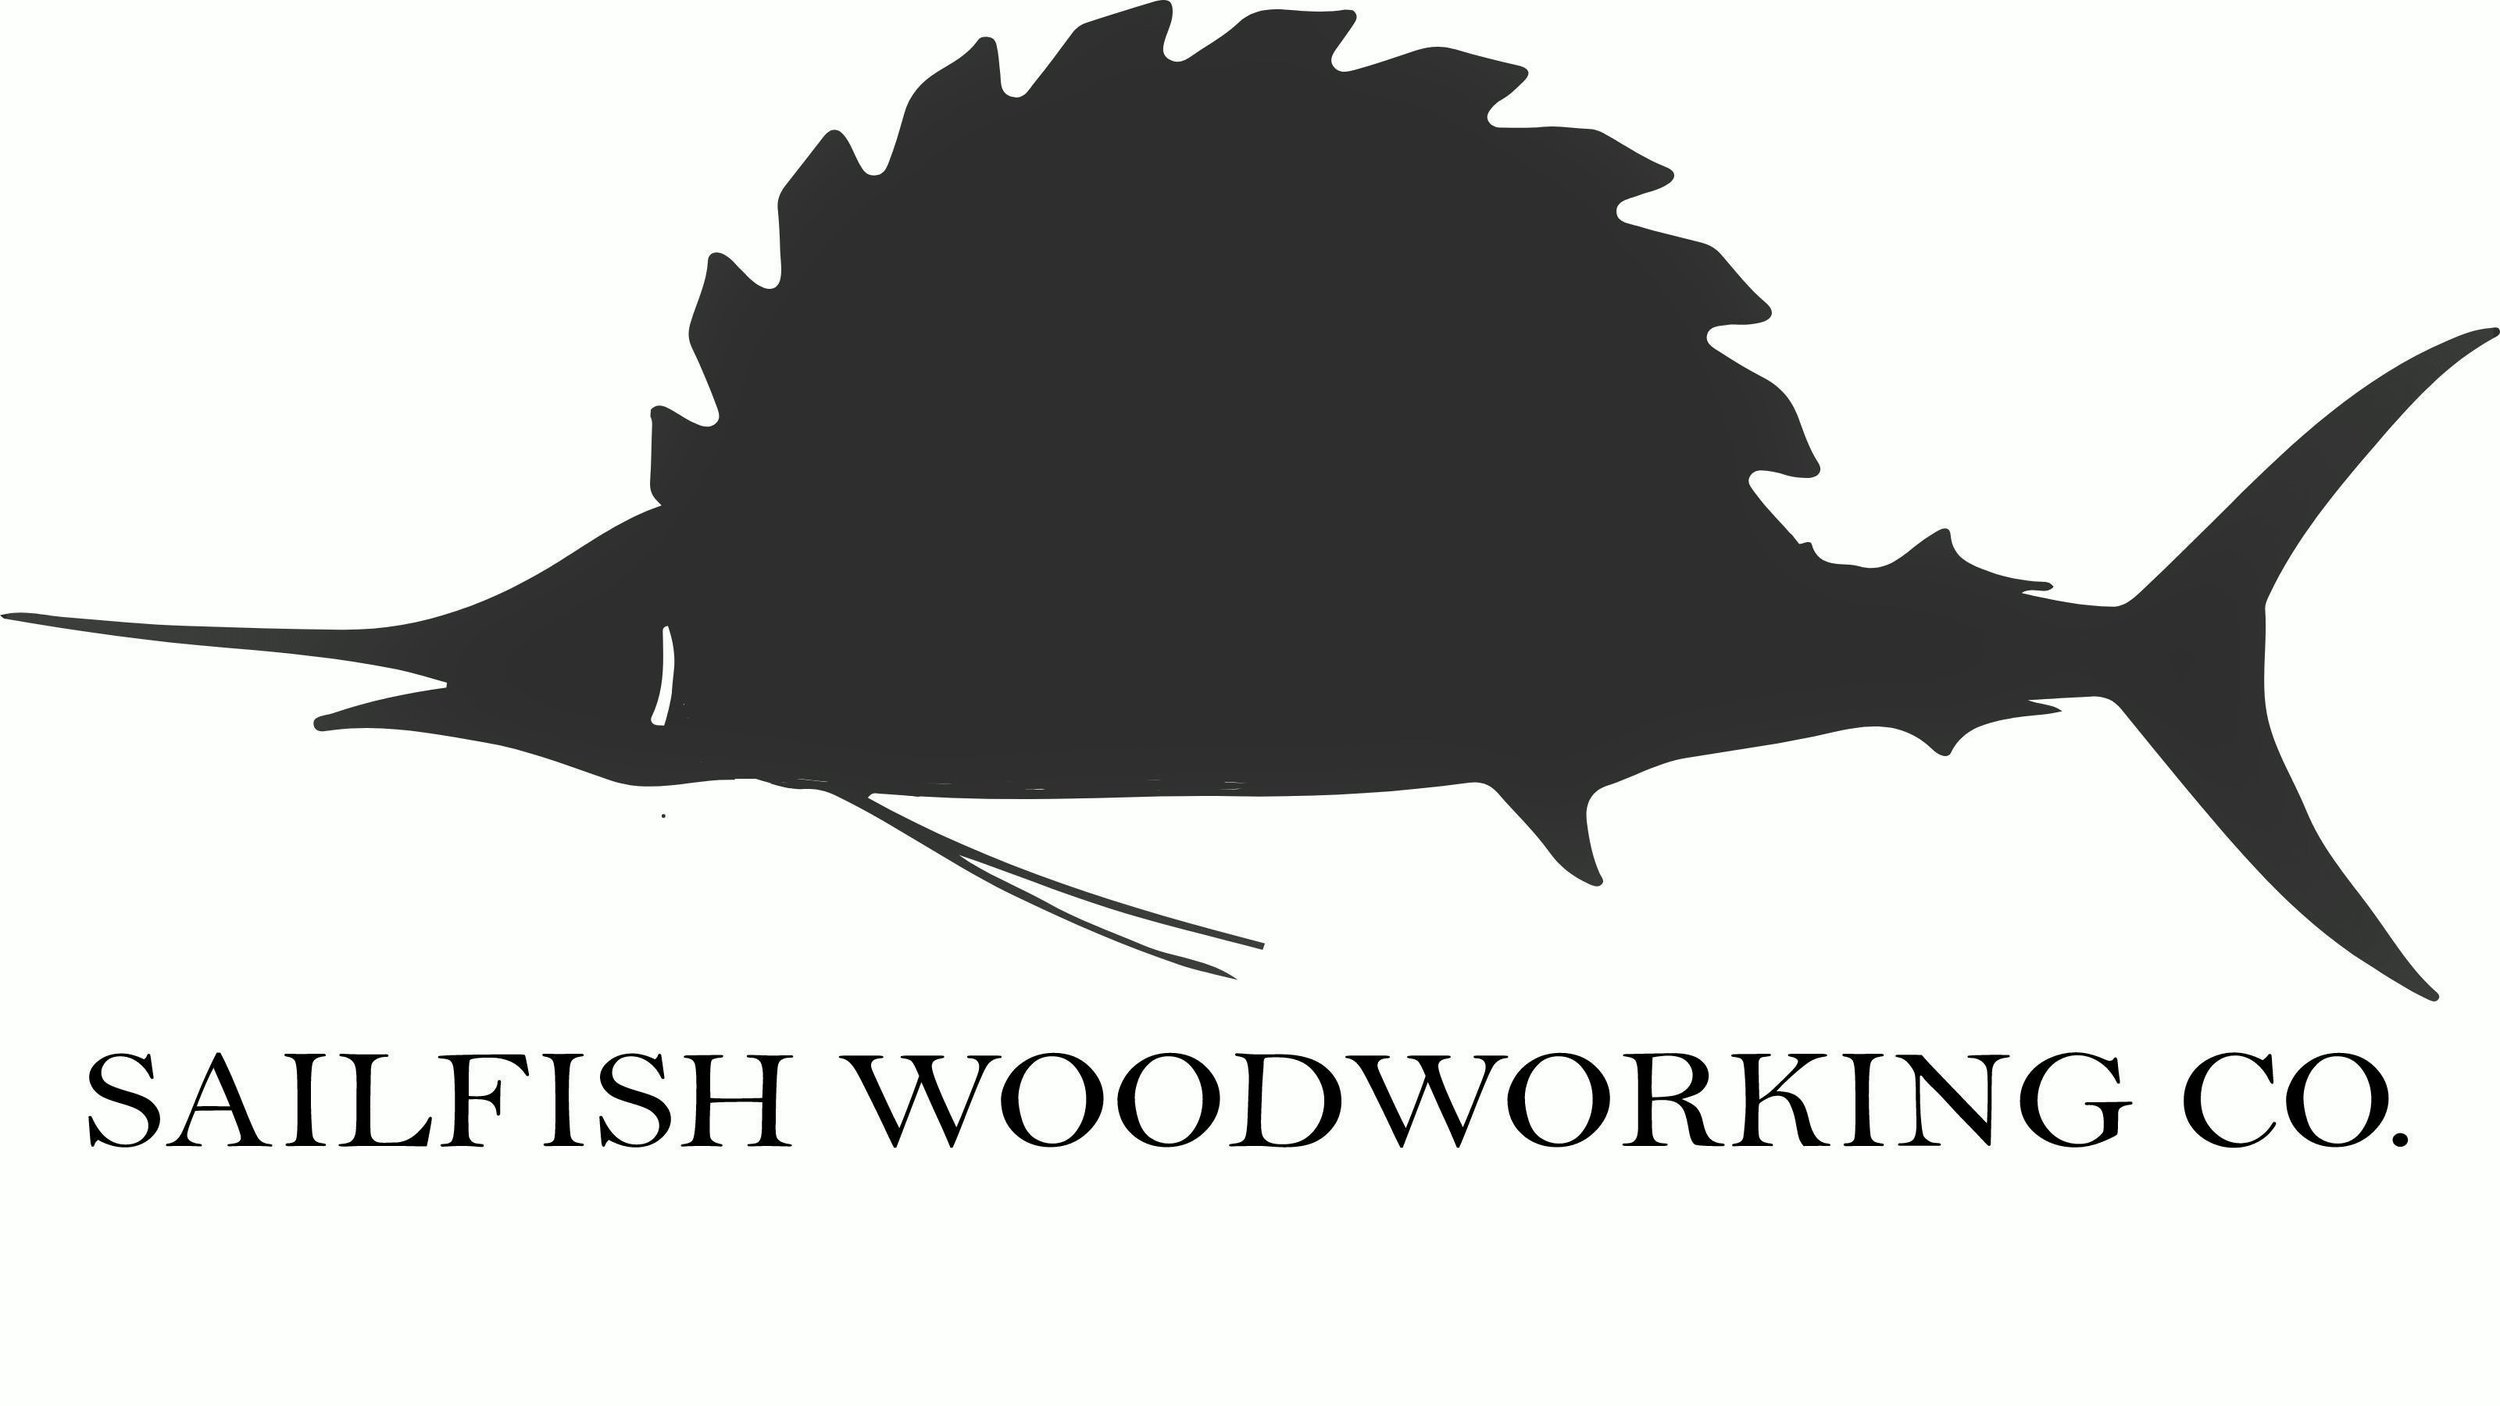 Sailfish T-Shirt — Sailfish Woodworking Co.